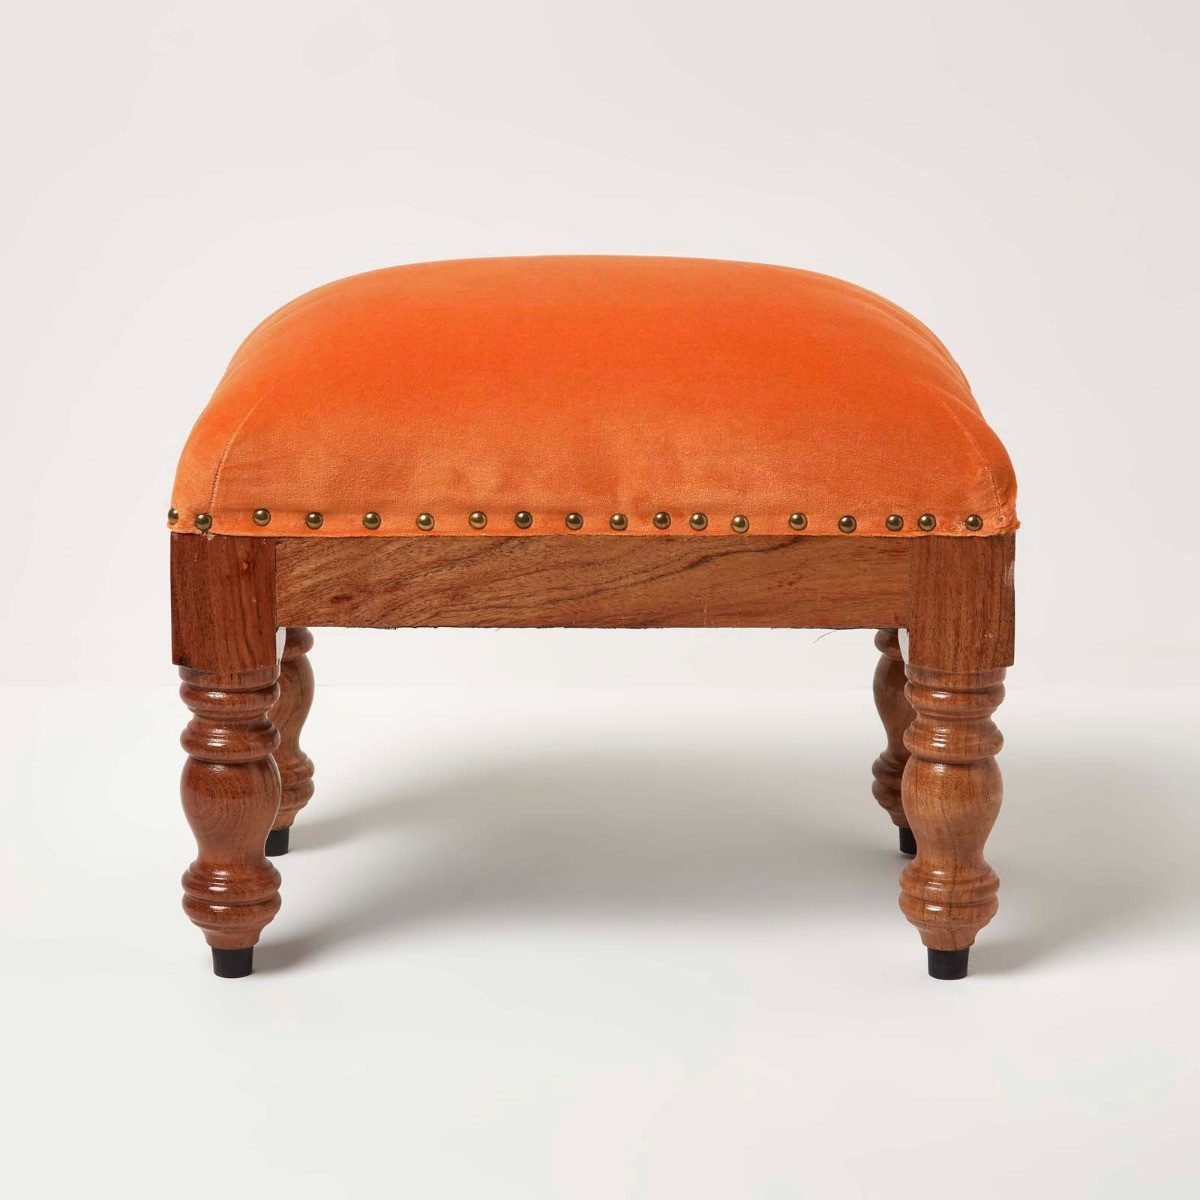 Homescapes Fußhocker Rechteckiger Samthocker Mable – orange mit Holzbeinen, 50 x 30 x 40 cm